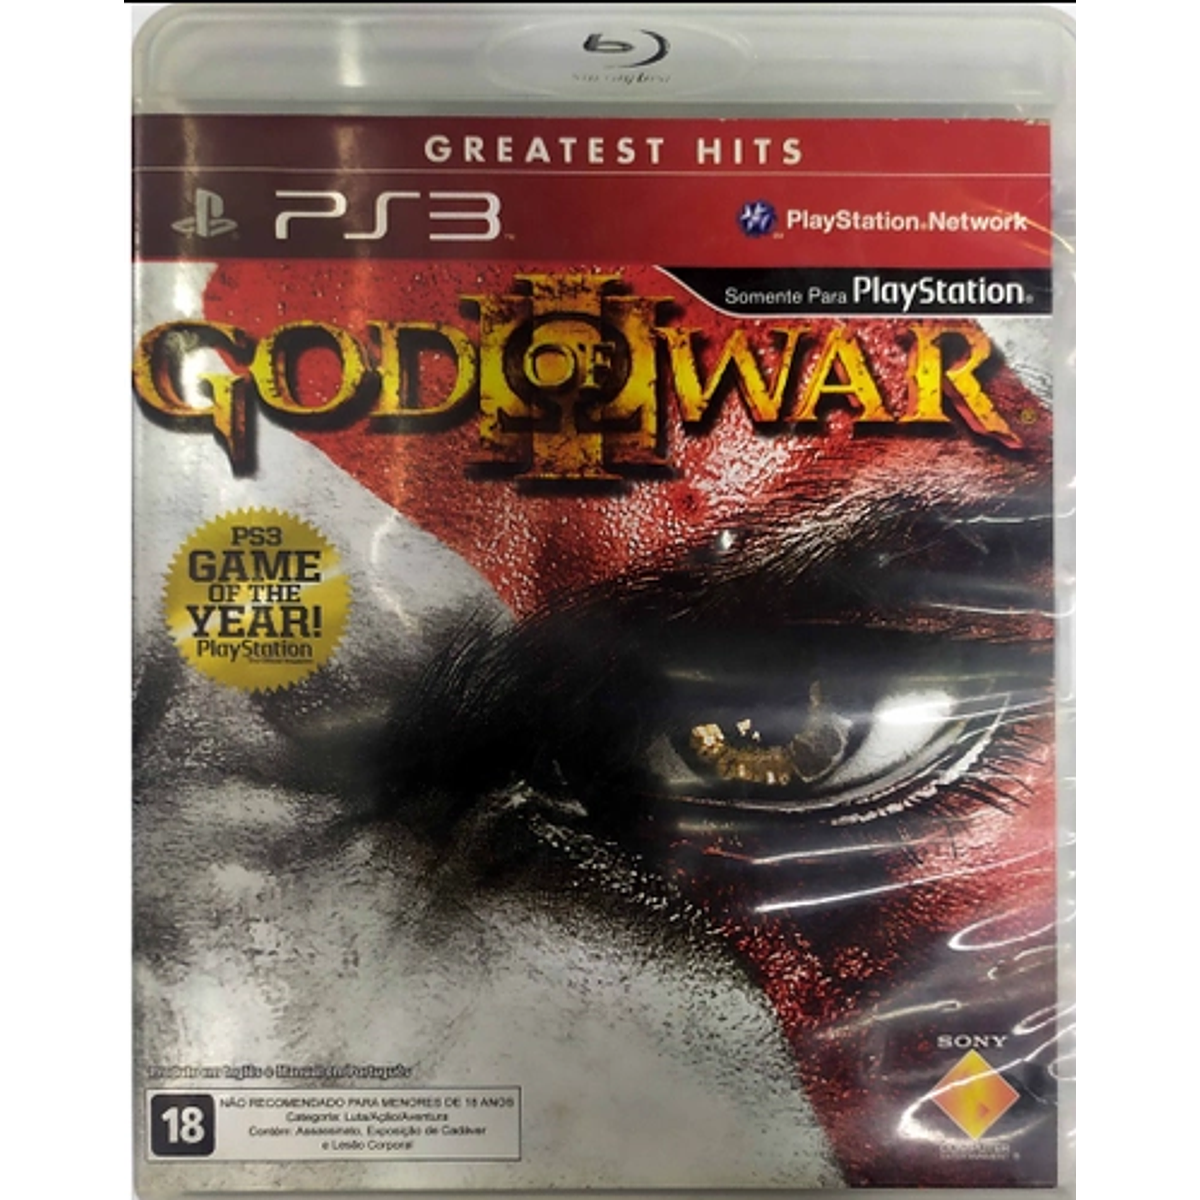 PS3 GOD OF WAR III